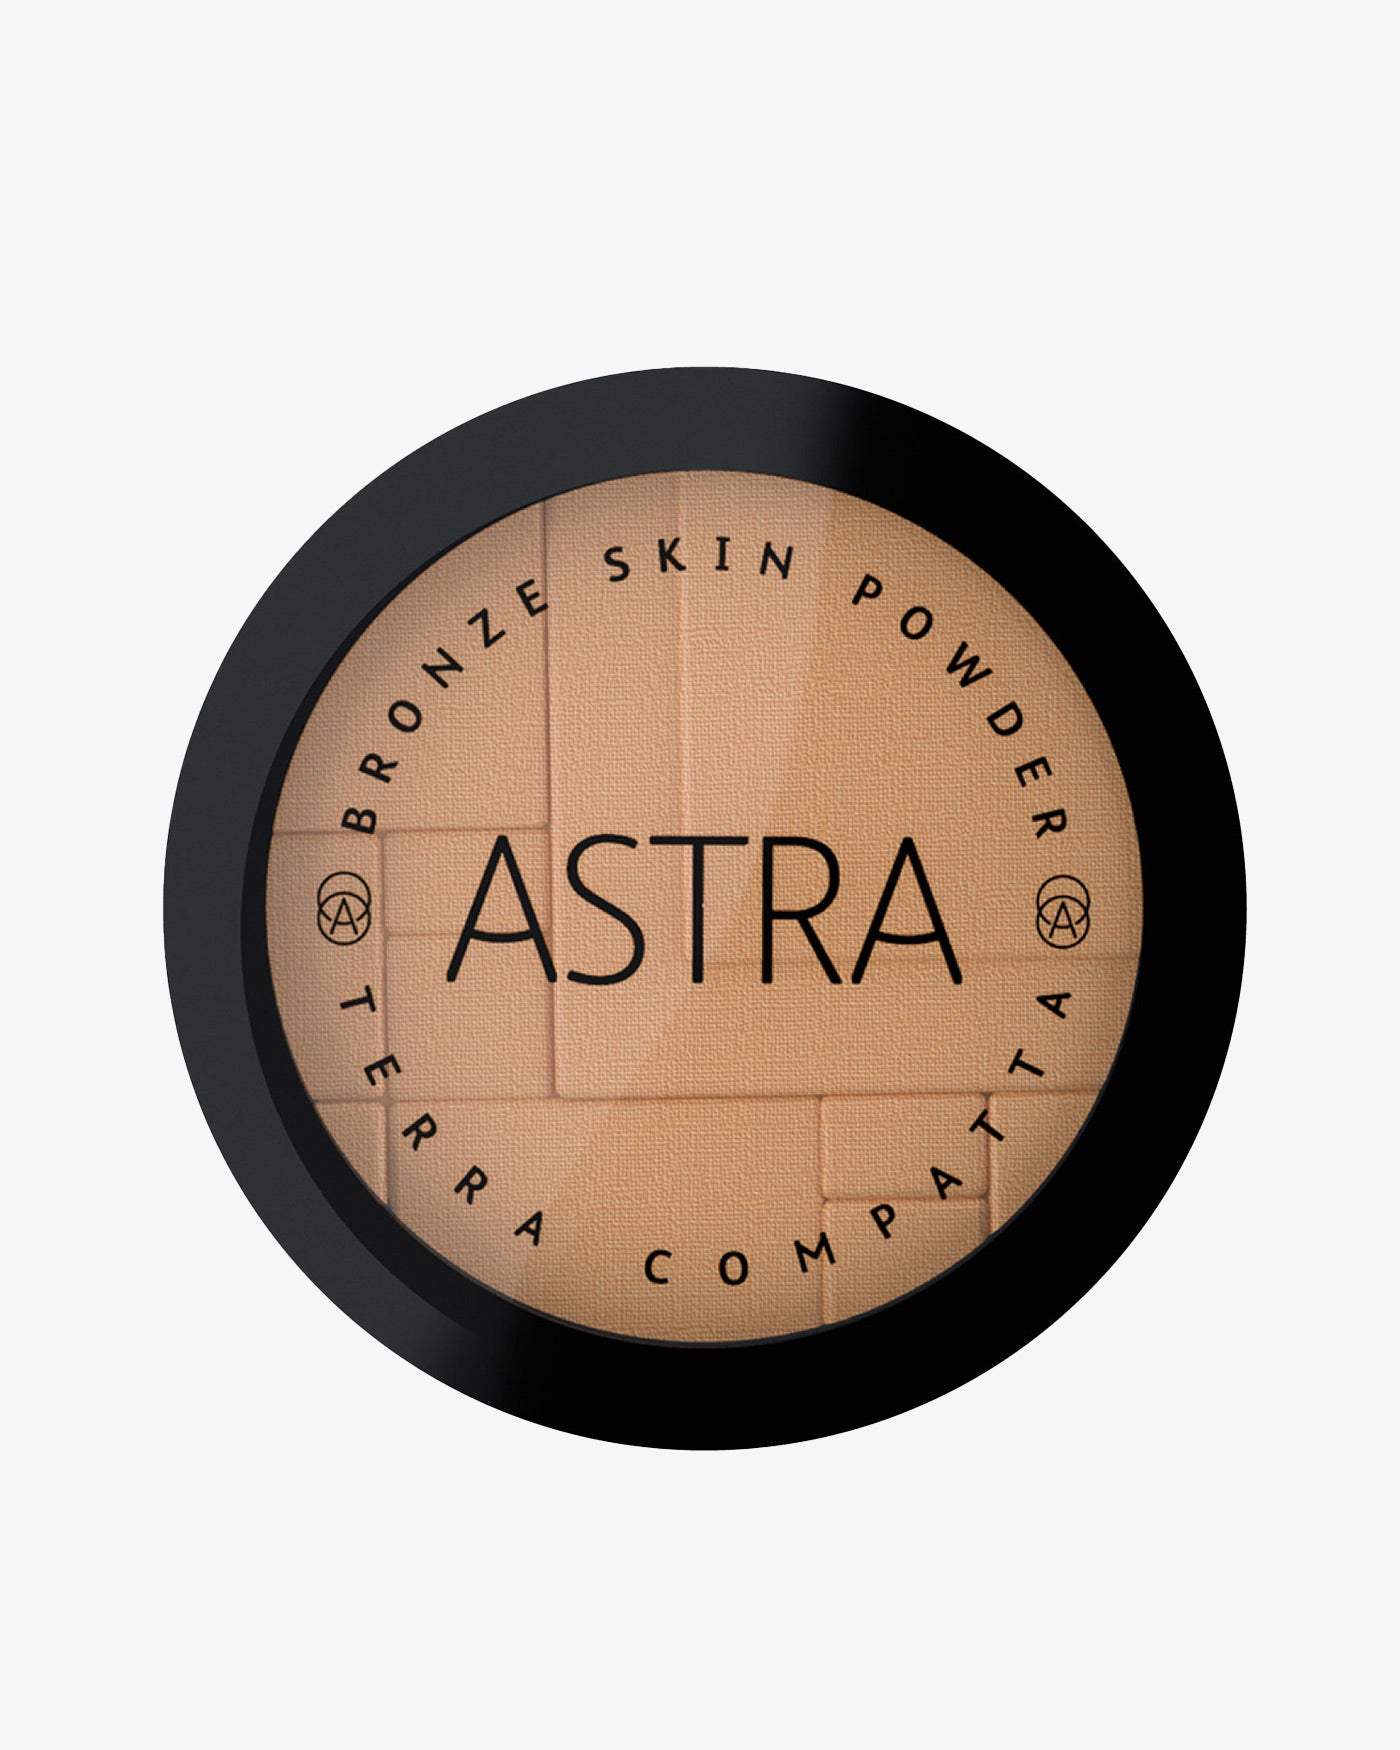 BRONZE SKIN POWDER - Colorazioni in Promozione - 22 - Cappuccino - Astra Make-Up